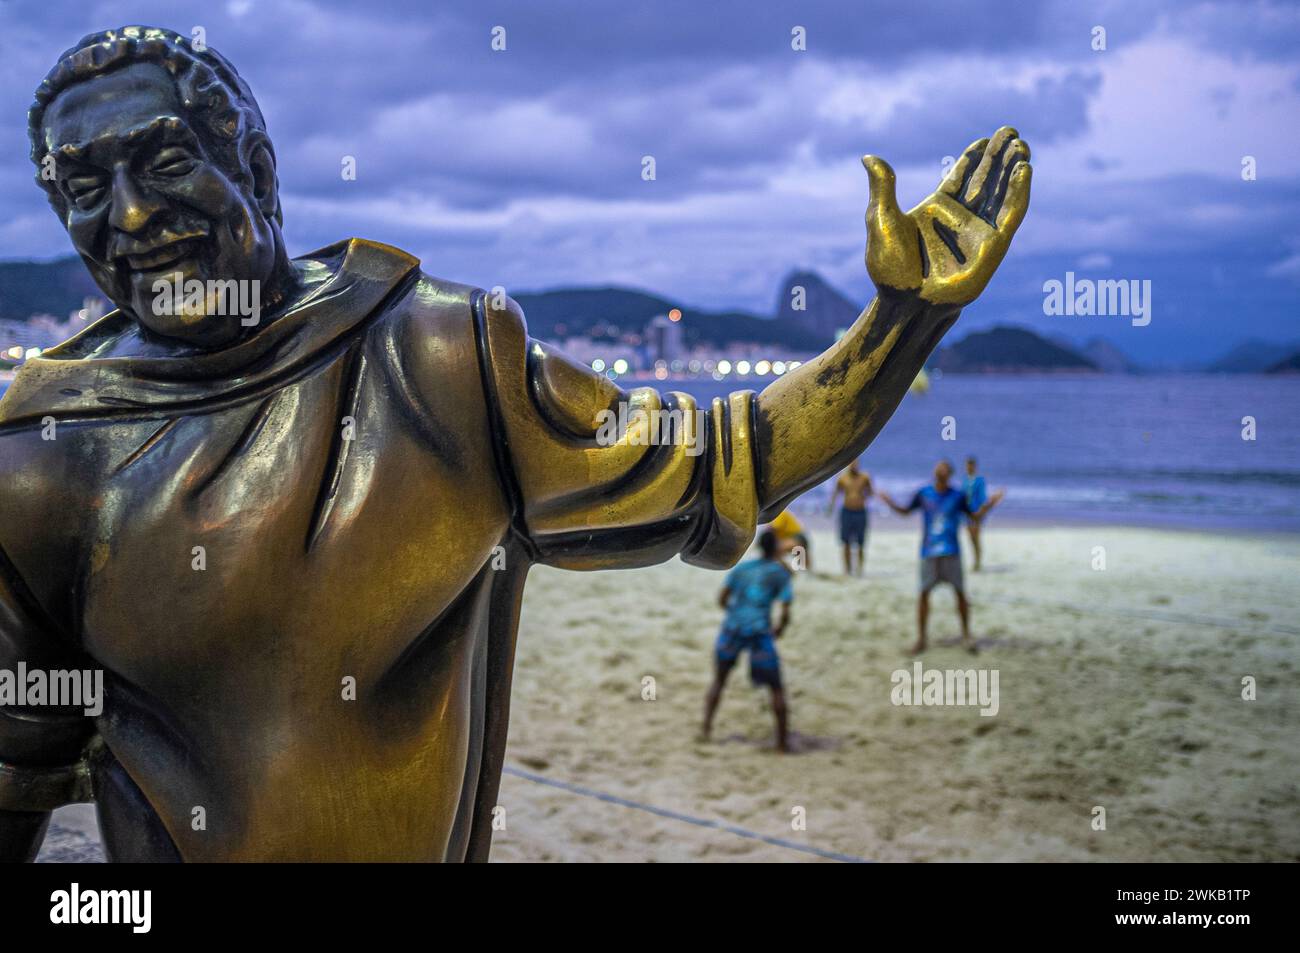 Statue von Dorival Caymmi (30. April 1914 – 16. August 2008) an der Strandpromenade Copacabana, Zuckerhut im Hintergrund, Rio de Janeiro, Brasilien. Caymmi war ein brasilianischer Sänger, Songwriter, Schauspieler und Maler, der mehr als 70 Jahre lang aktiv war. Er trug zur Entstehung der brasilianischen Bossa-nova-Bewegung bei, und einige seiner Samba-Stücke wurden zu Grundfesten der brasilianischen Popmusik. Ebenso bemerkenswert sind seine Balladen, die die Fischer und Frauen von Bahia feiern. Caymmi komponierte etwa 100 Lieder zu seinen Lebzeiten, und viele seiner Werke gelten heute als brasilianische Klassiker. Stockfoto